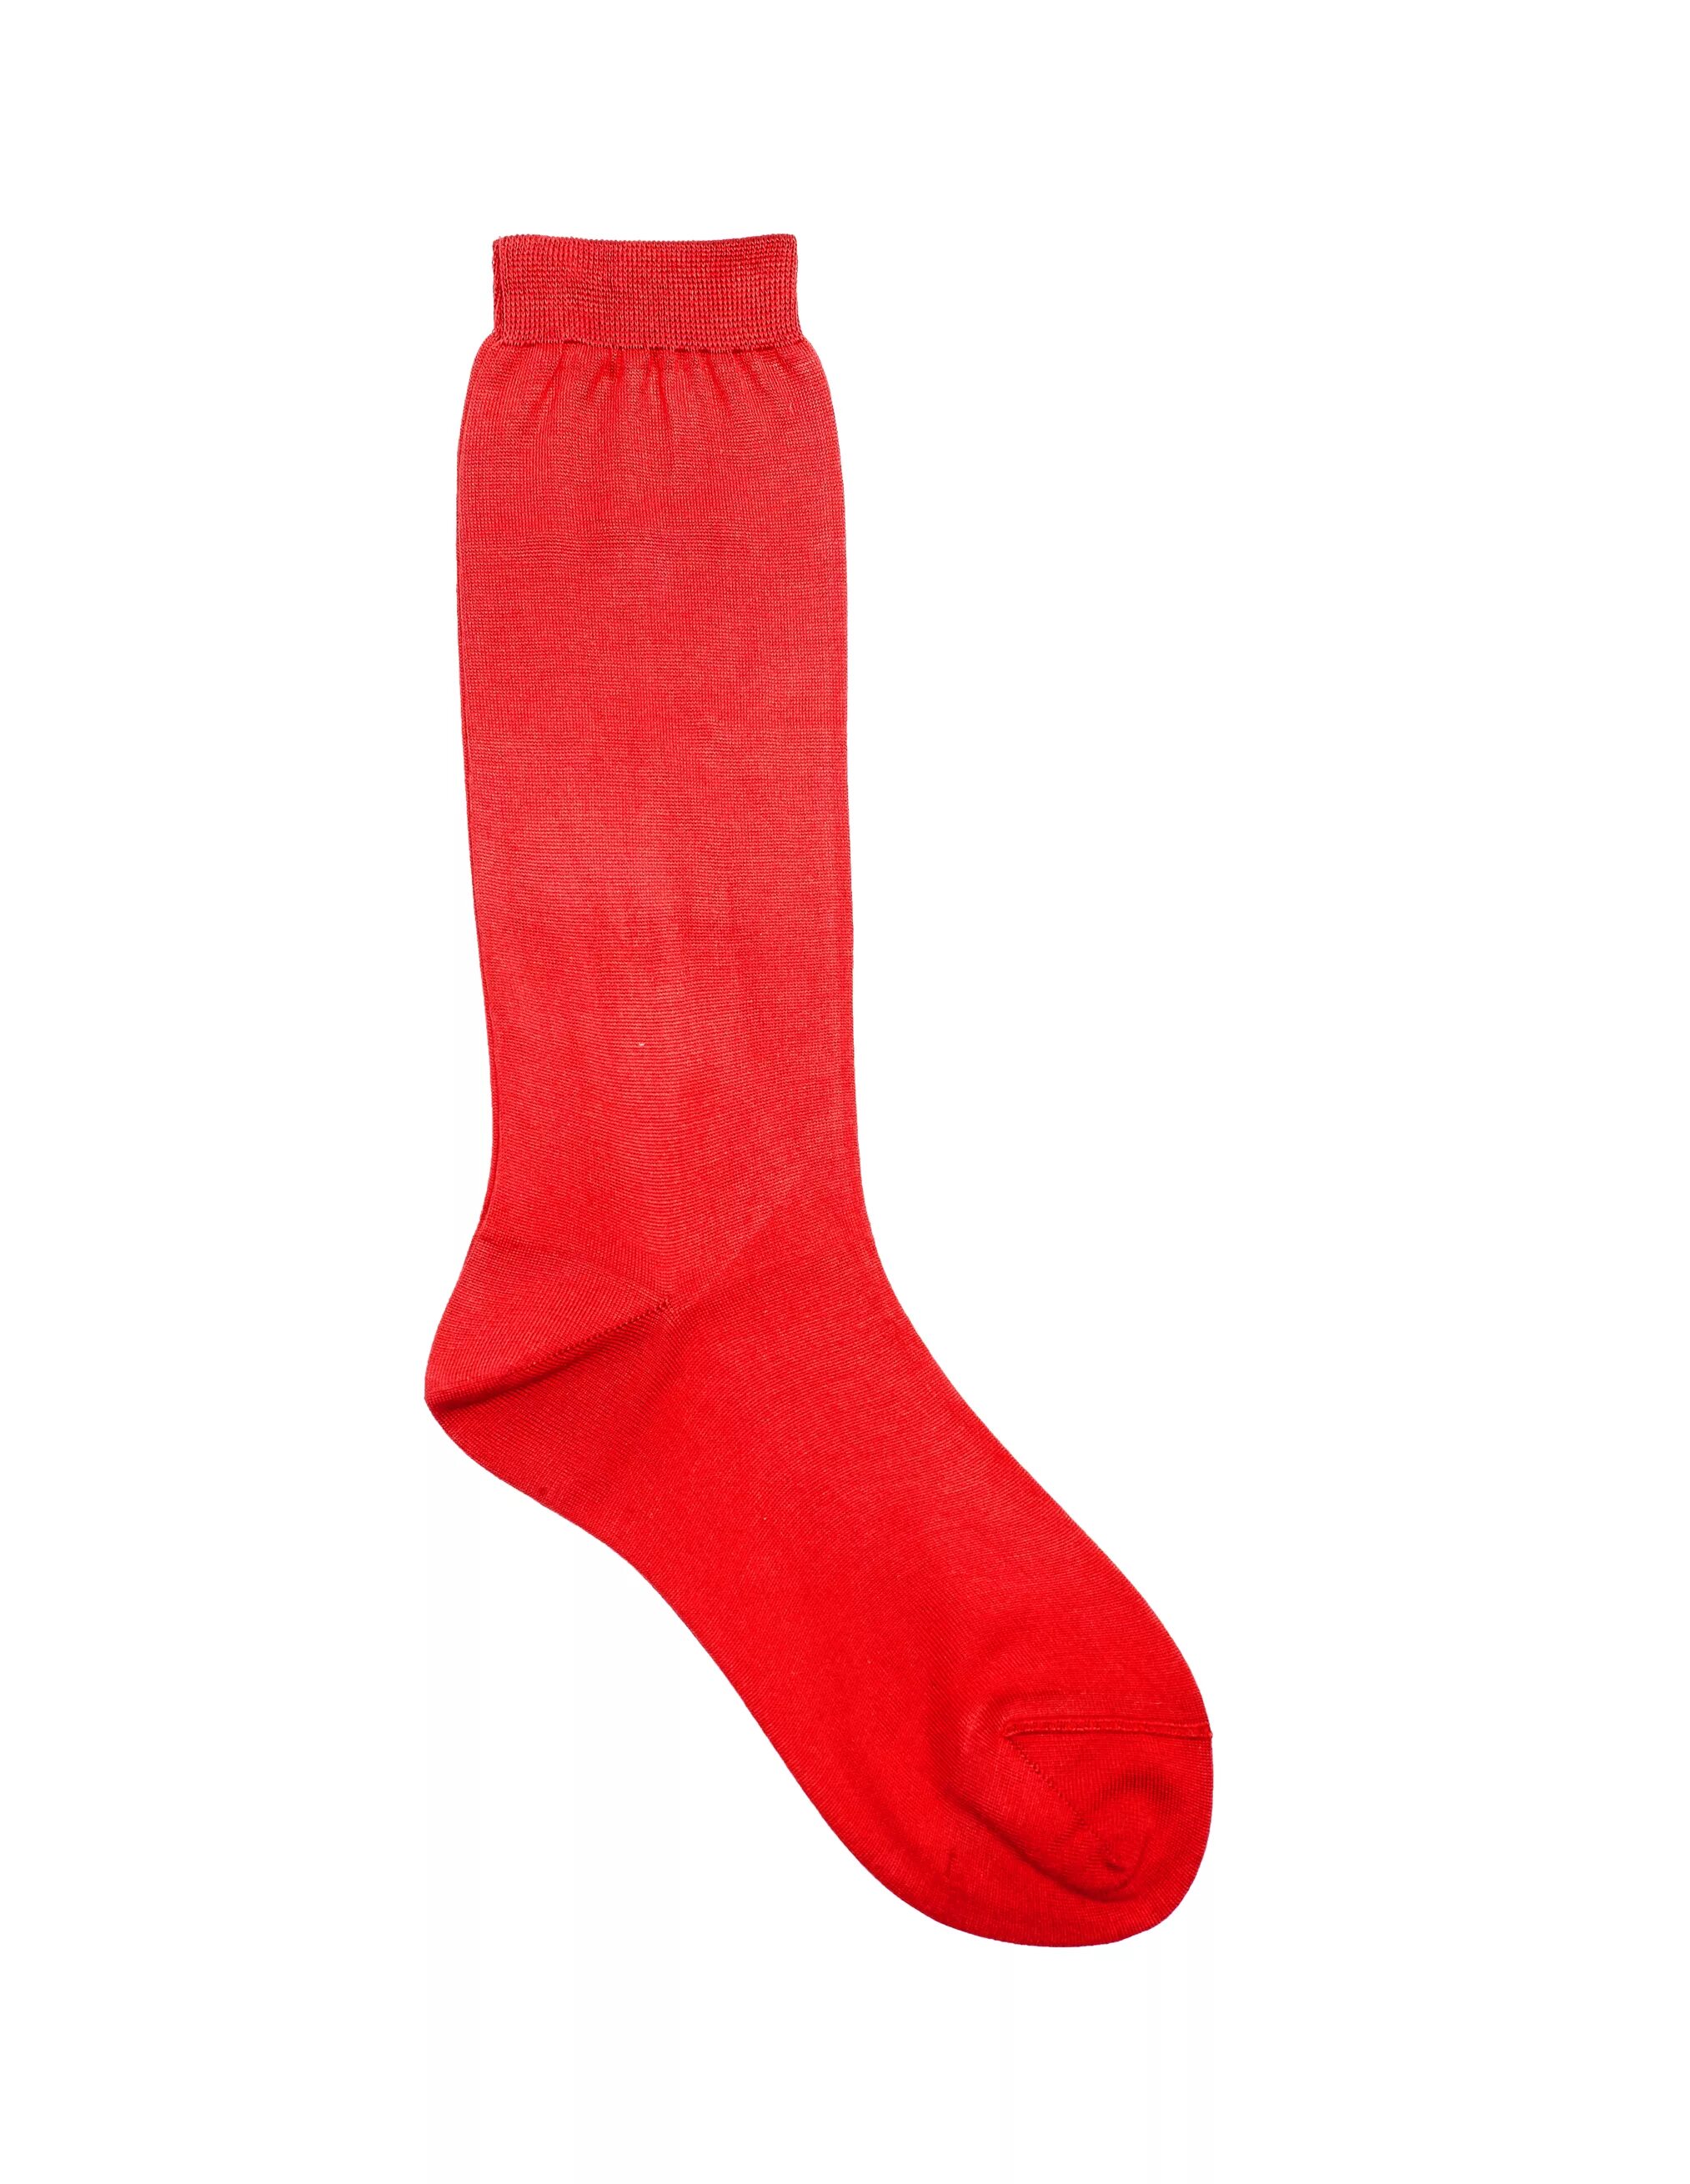 Красные носки. Красные носки женские. Носки красные женские высокие. Шёлковые красные носки.